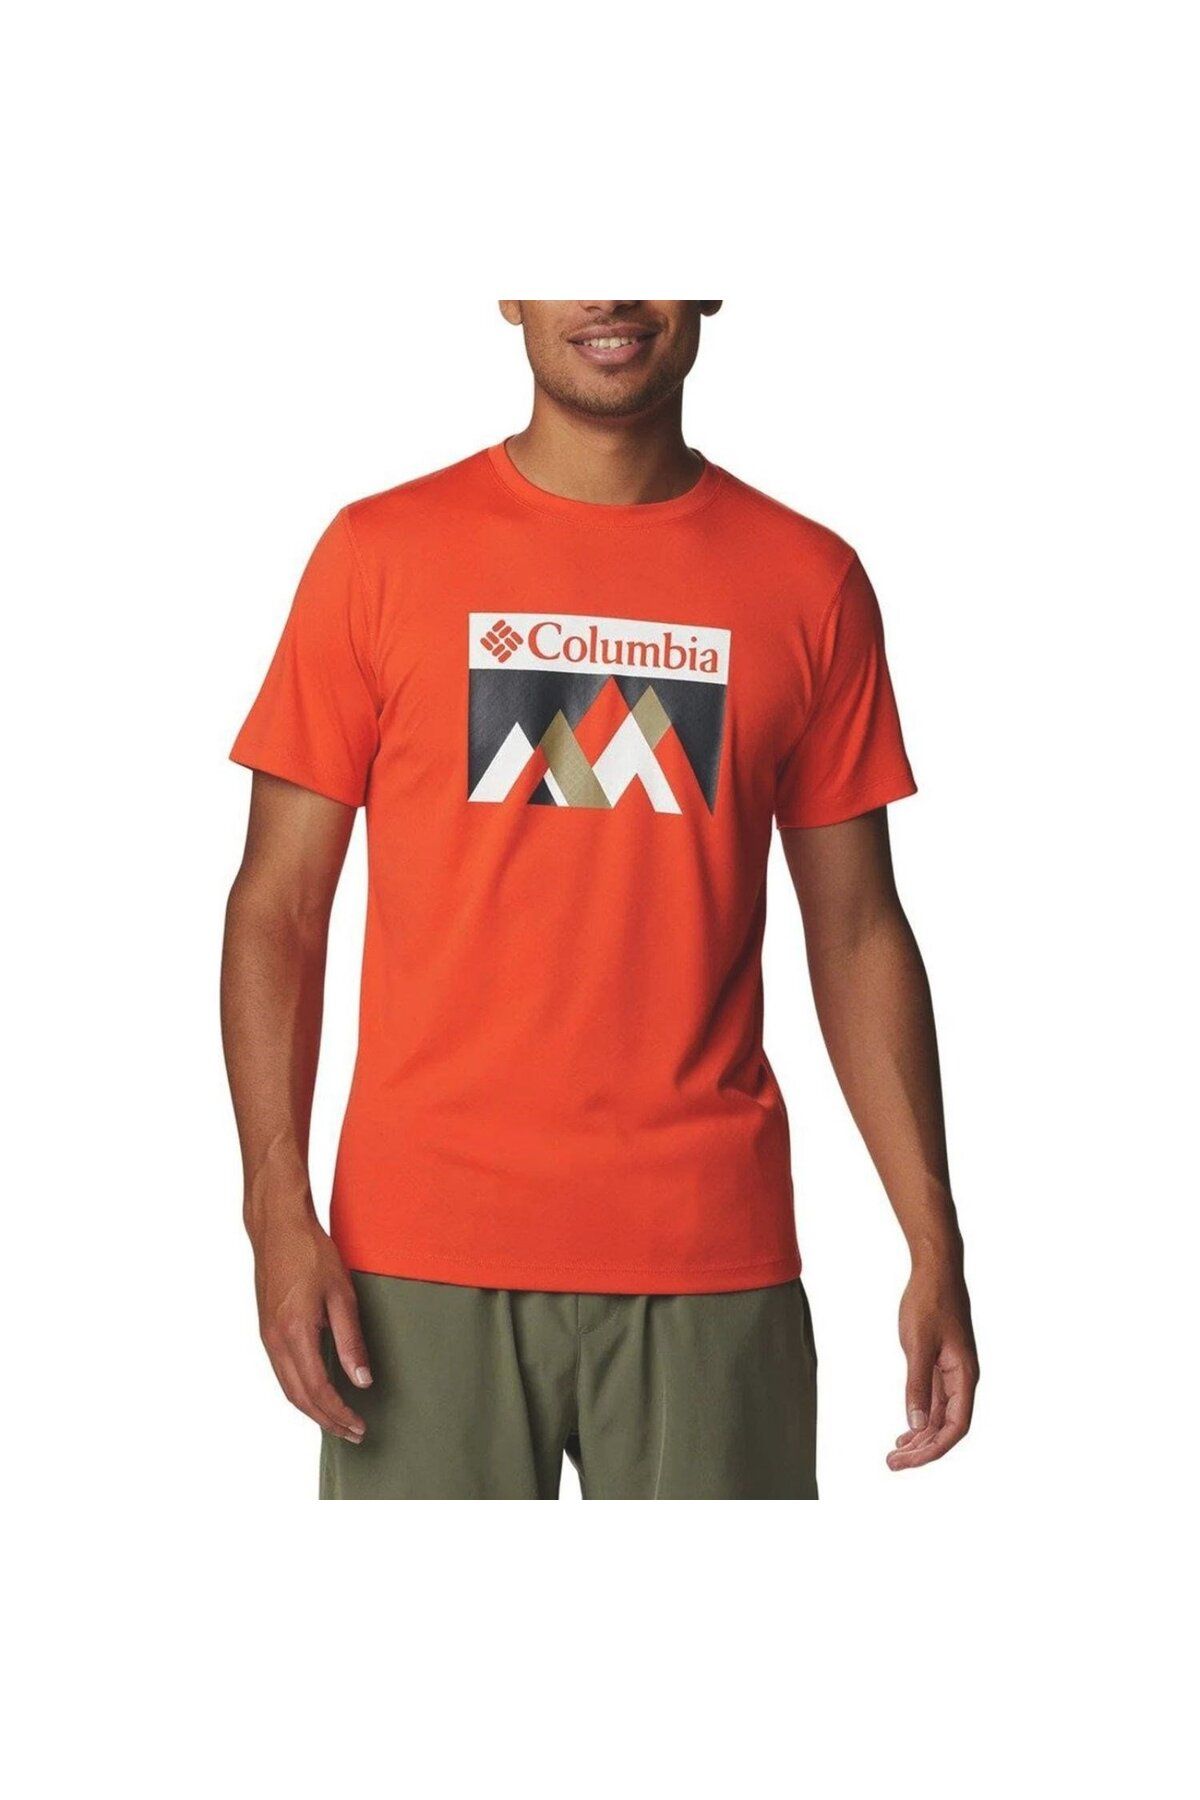 Columbia Zero Rules Short Sleeve Graphic Turuncu T-shirt